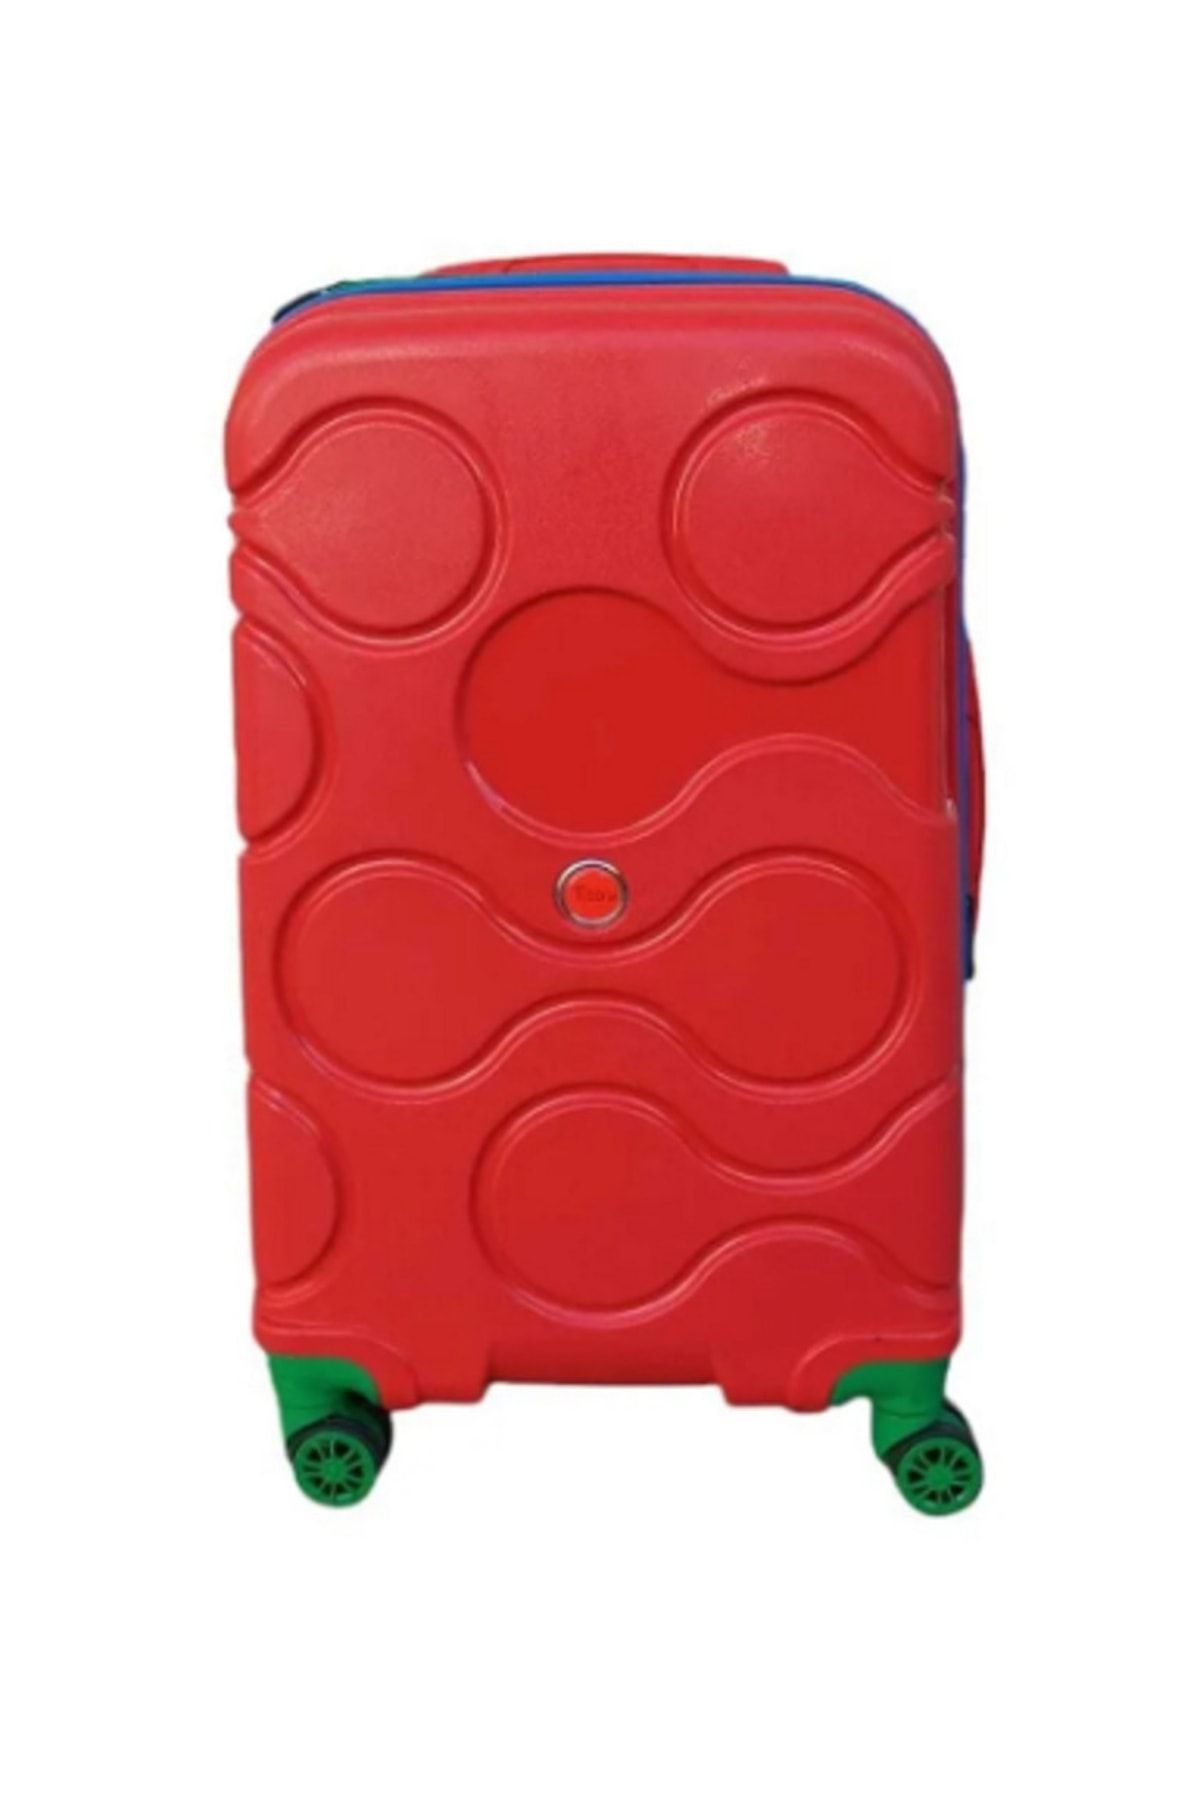 Elif Pp110x Kırmızı-mavi-yeşil Kırılmaz Pp Kasa Kabin Boy Valiz 605564